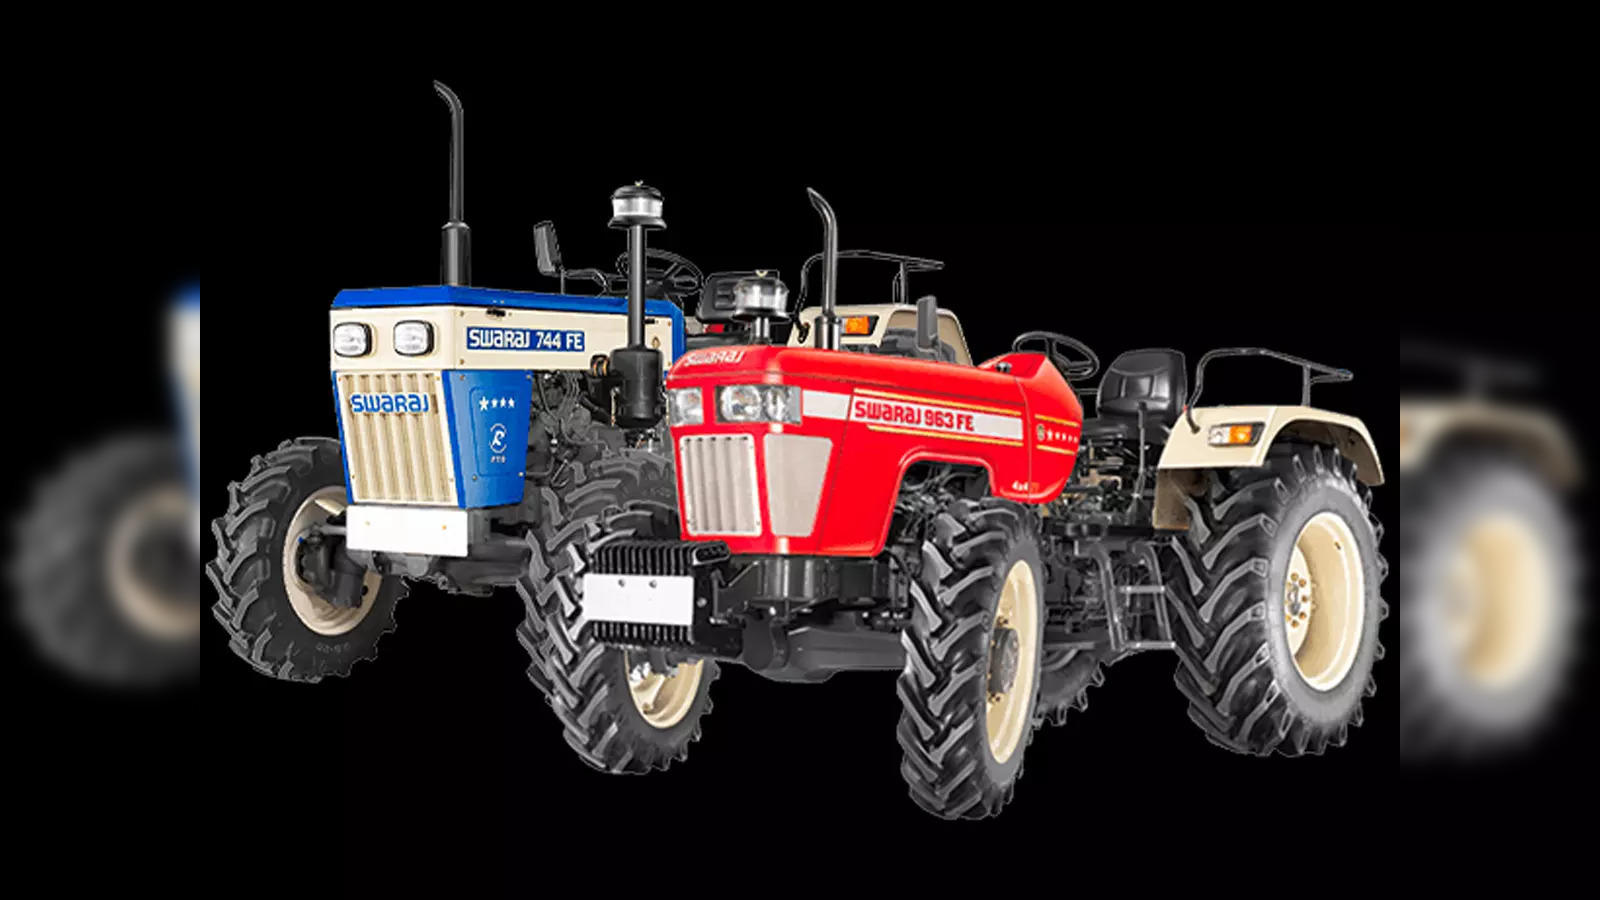 Swaraj 963 FE Tractor specification and Swaraj 963 fe tractor